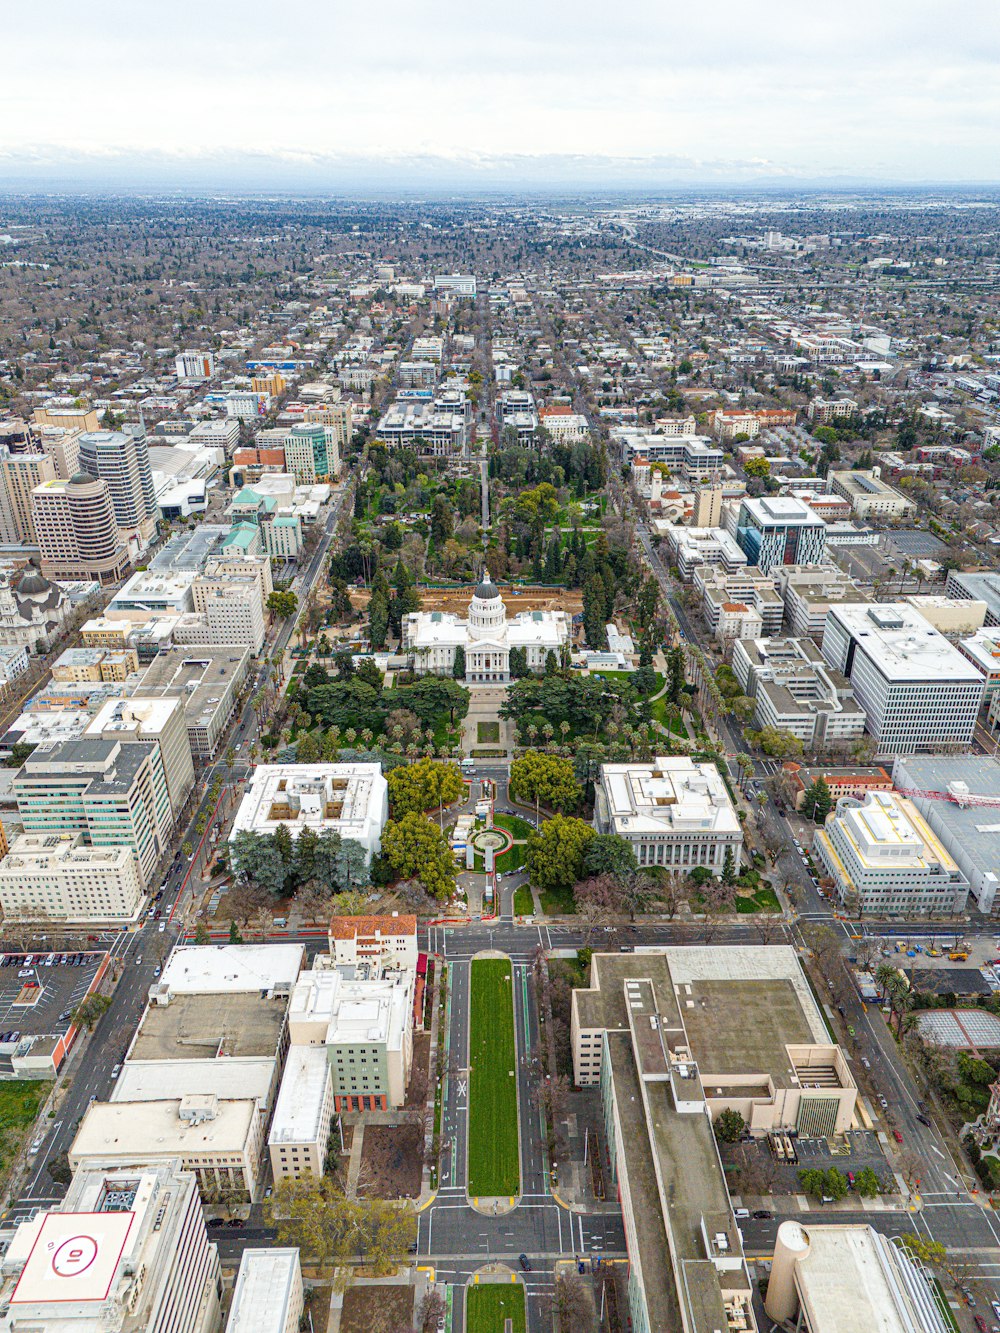 Une vue aérienne d’une ville avec beaucoup de grands bâtiments